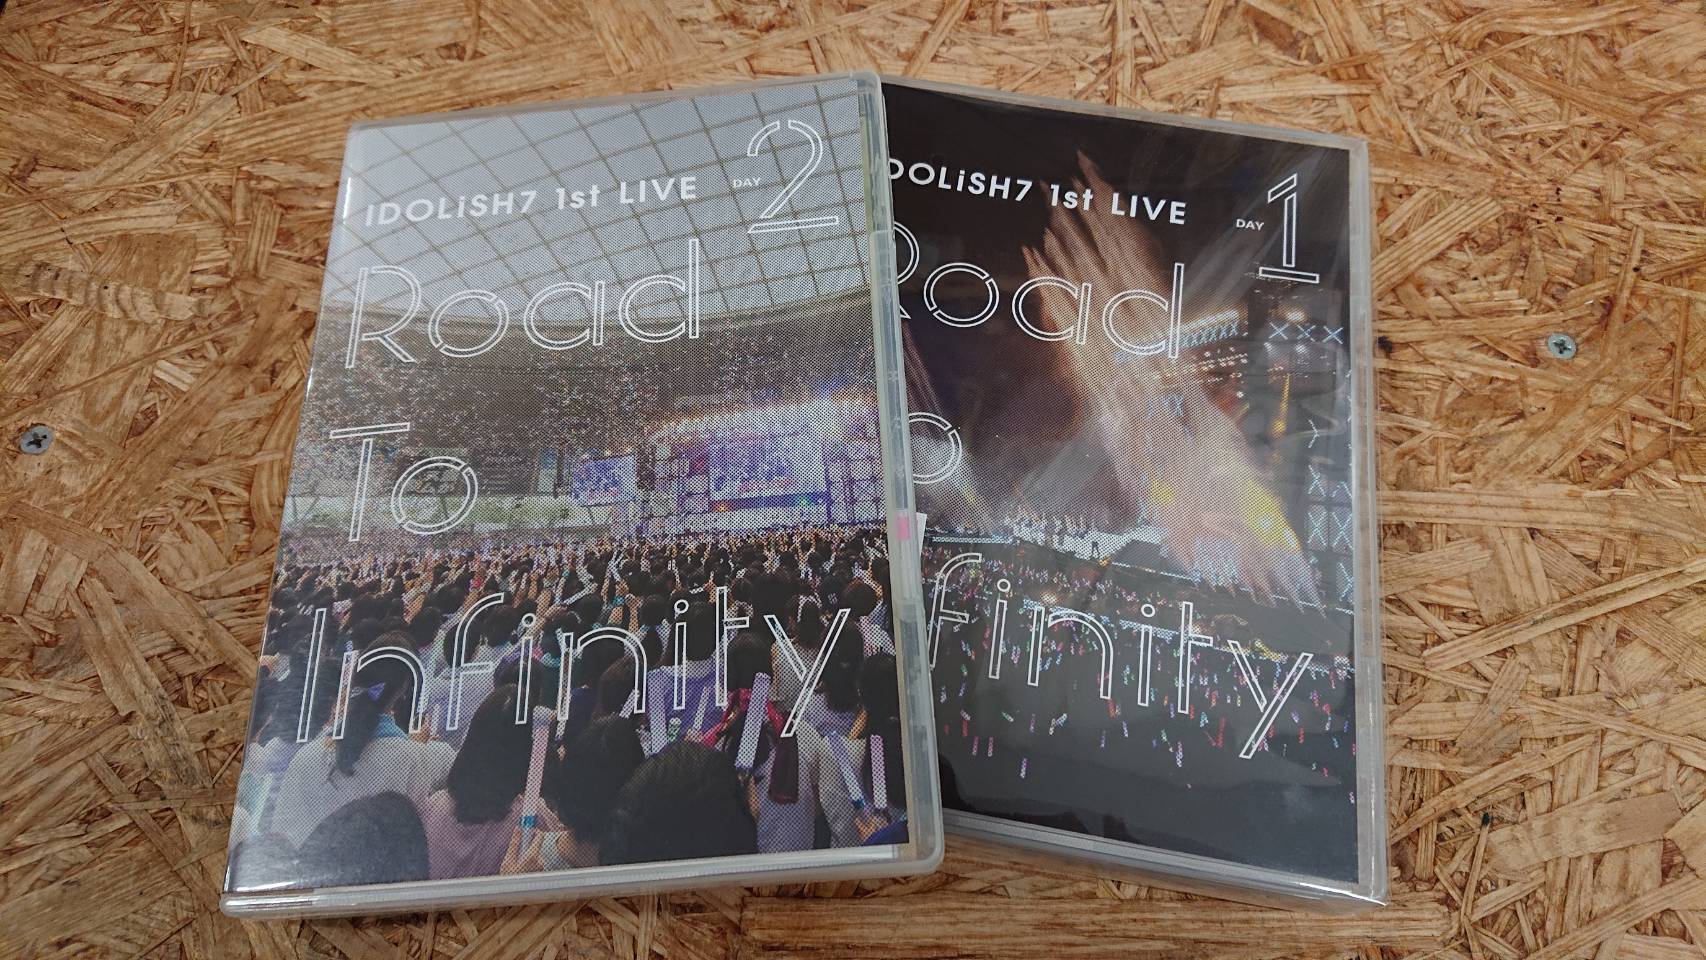 2790円 【テレビで話題】 アイドリッシュセブン 1st LIVE Road To Infinity DVD